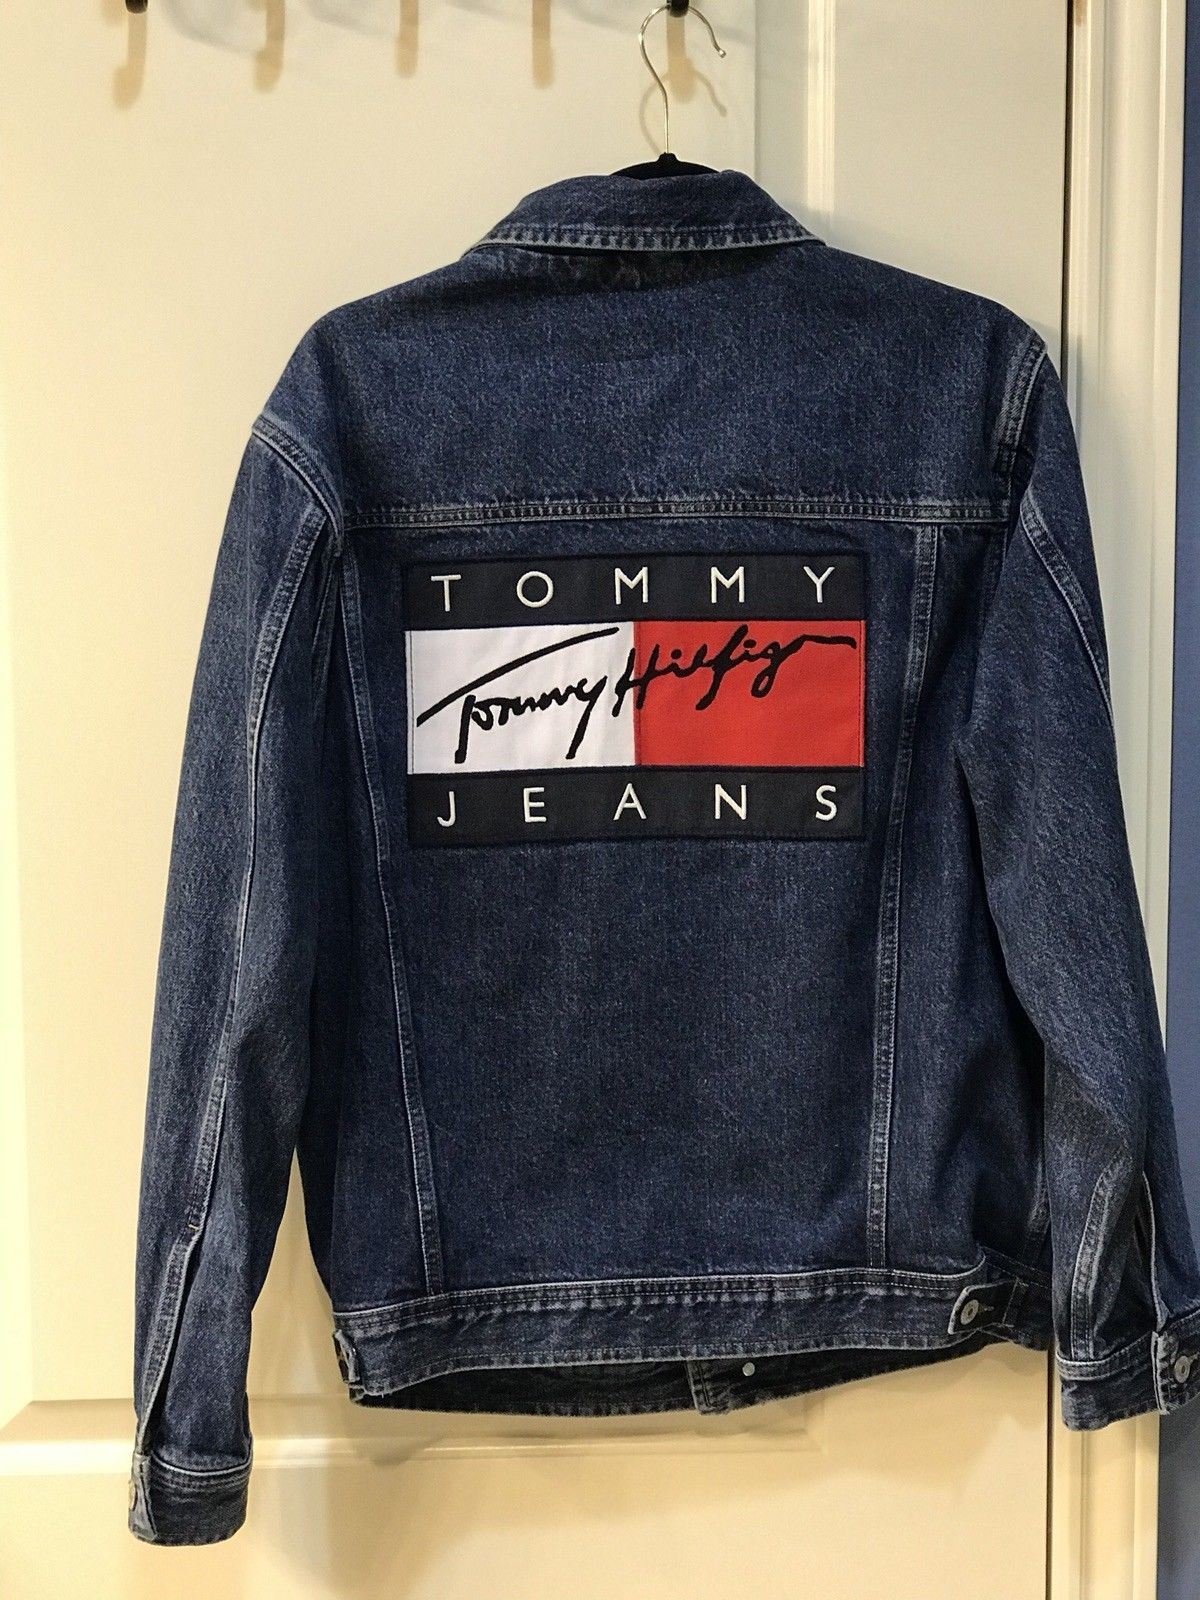 Tommy Hilfiger : 5 modèles de vestes vintages vendues sur eBay !